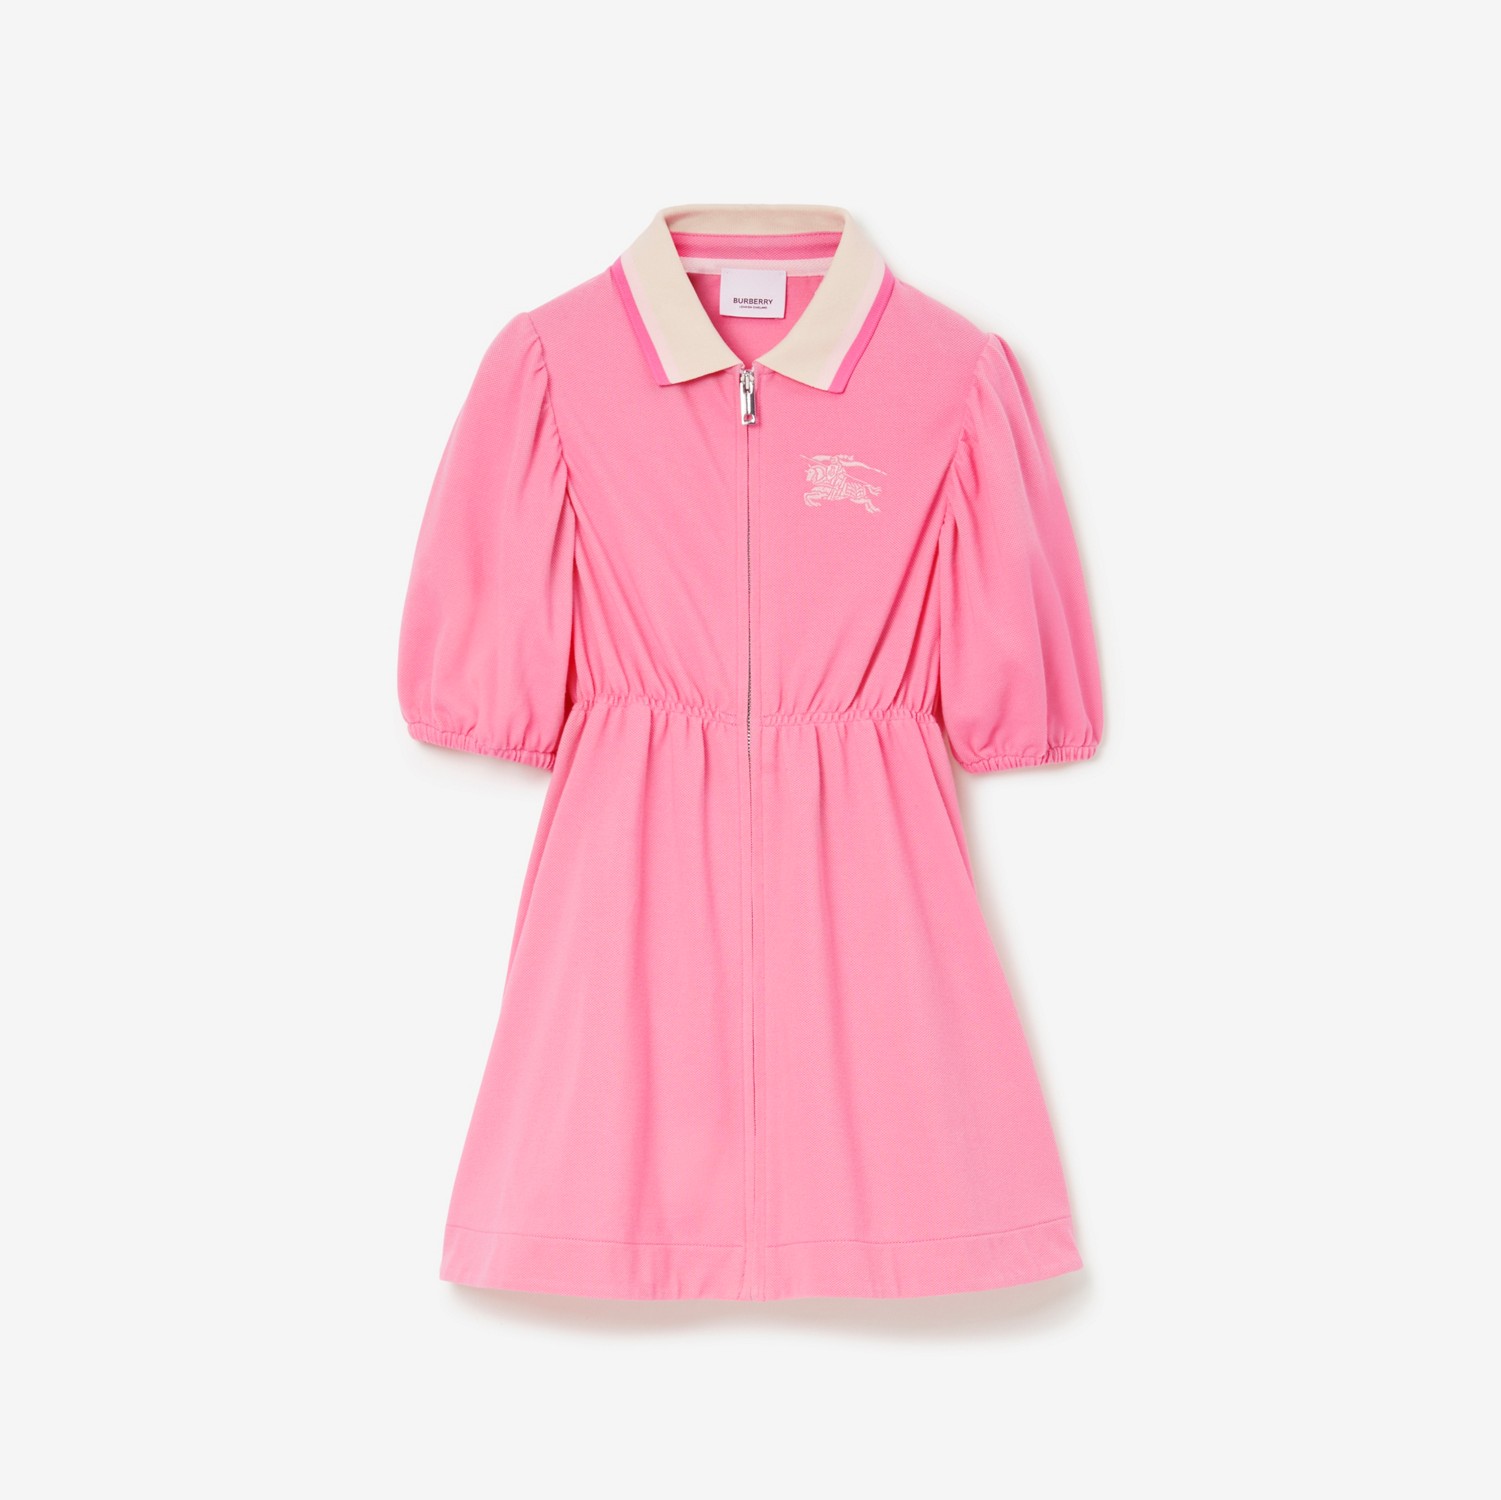 Vestitino stile polo in cotone con EKD (Rosa Caramella Delicato) | Sito ufficiale Burberry®